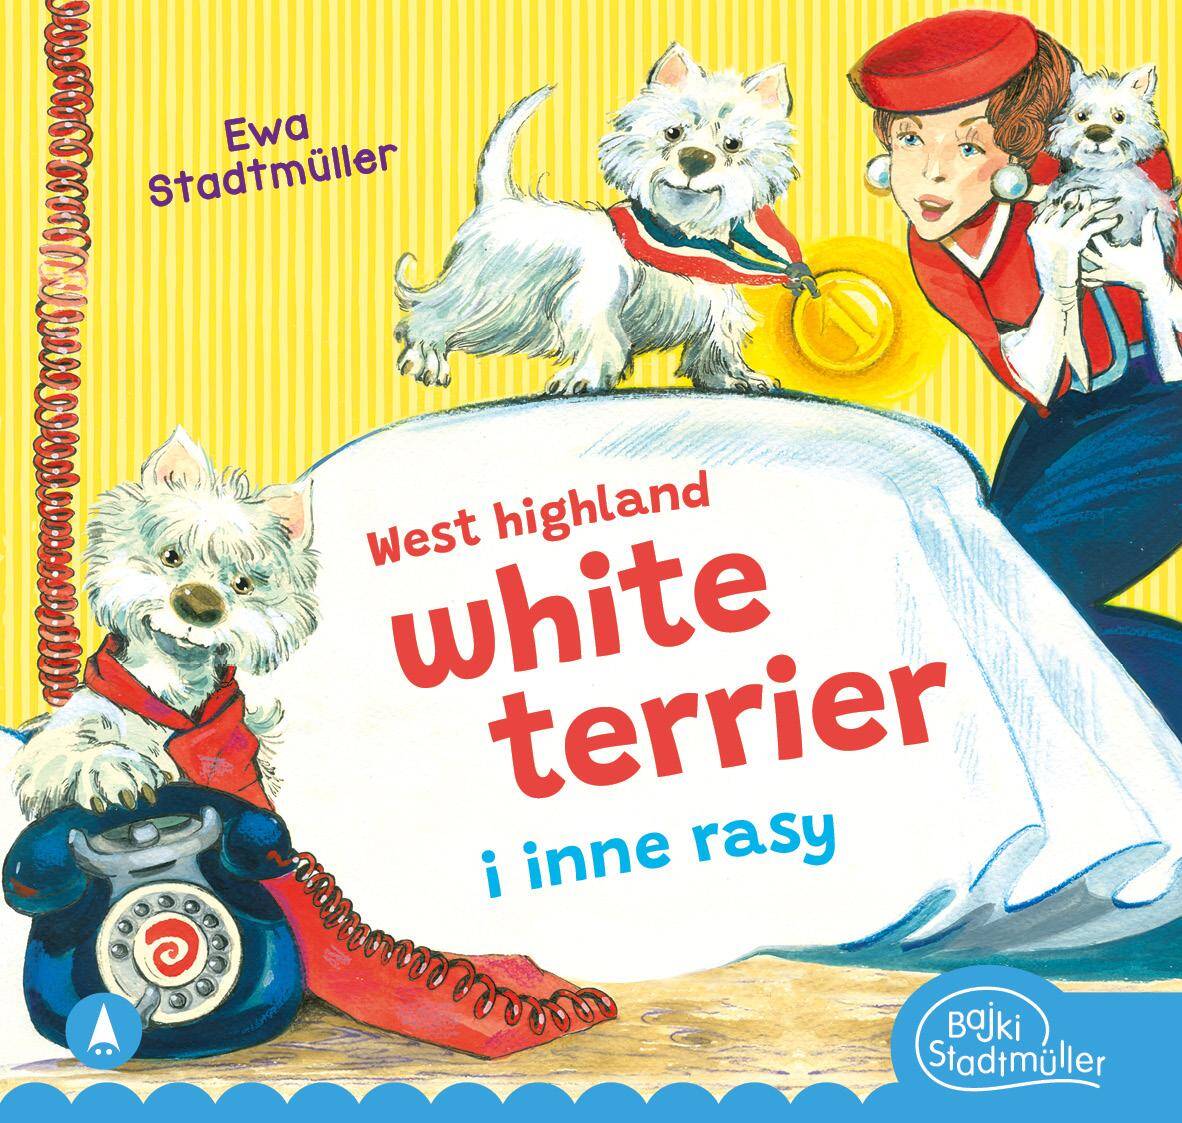 West highland, white terrier i inne rasy